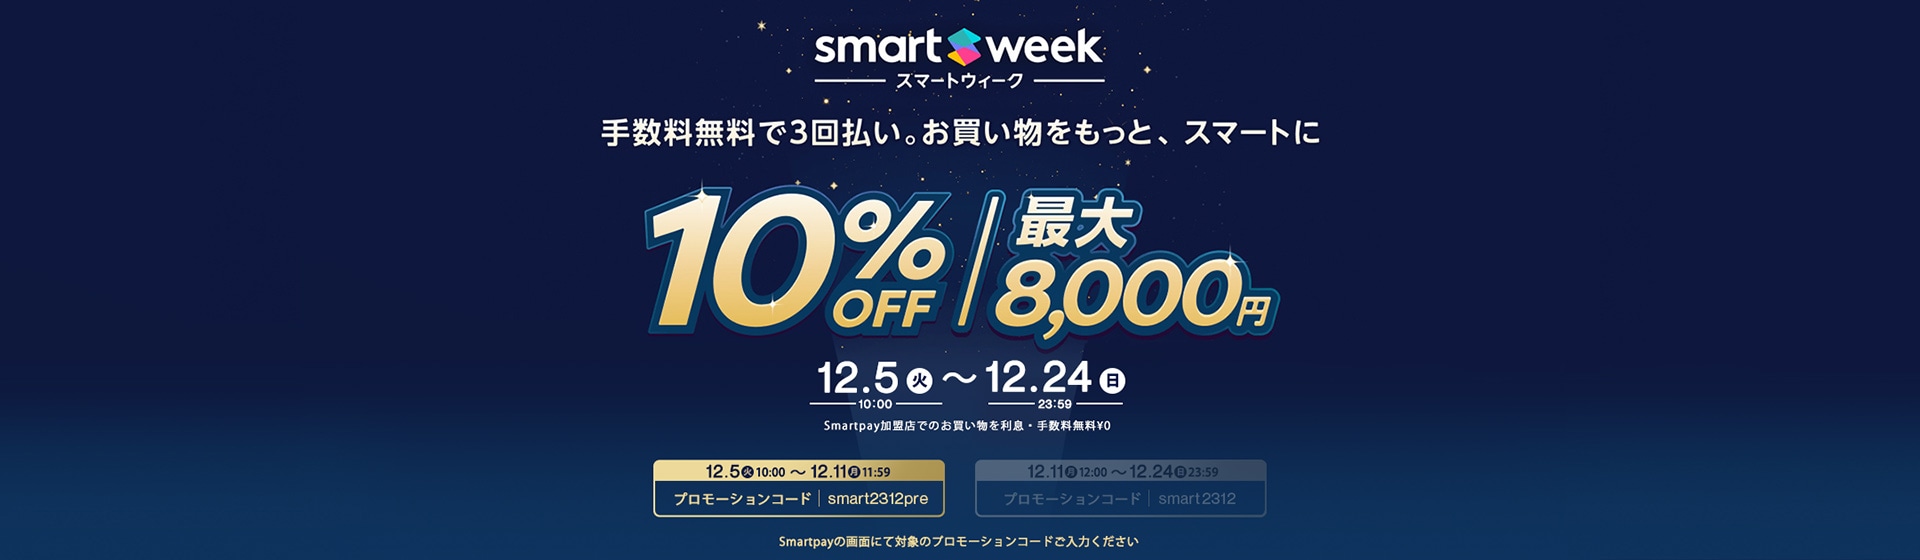 smartweek